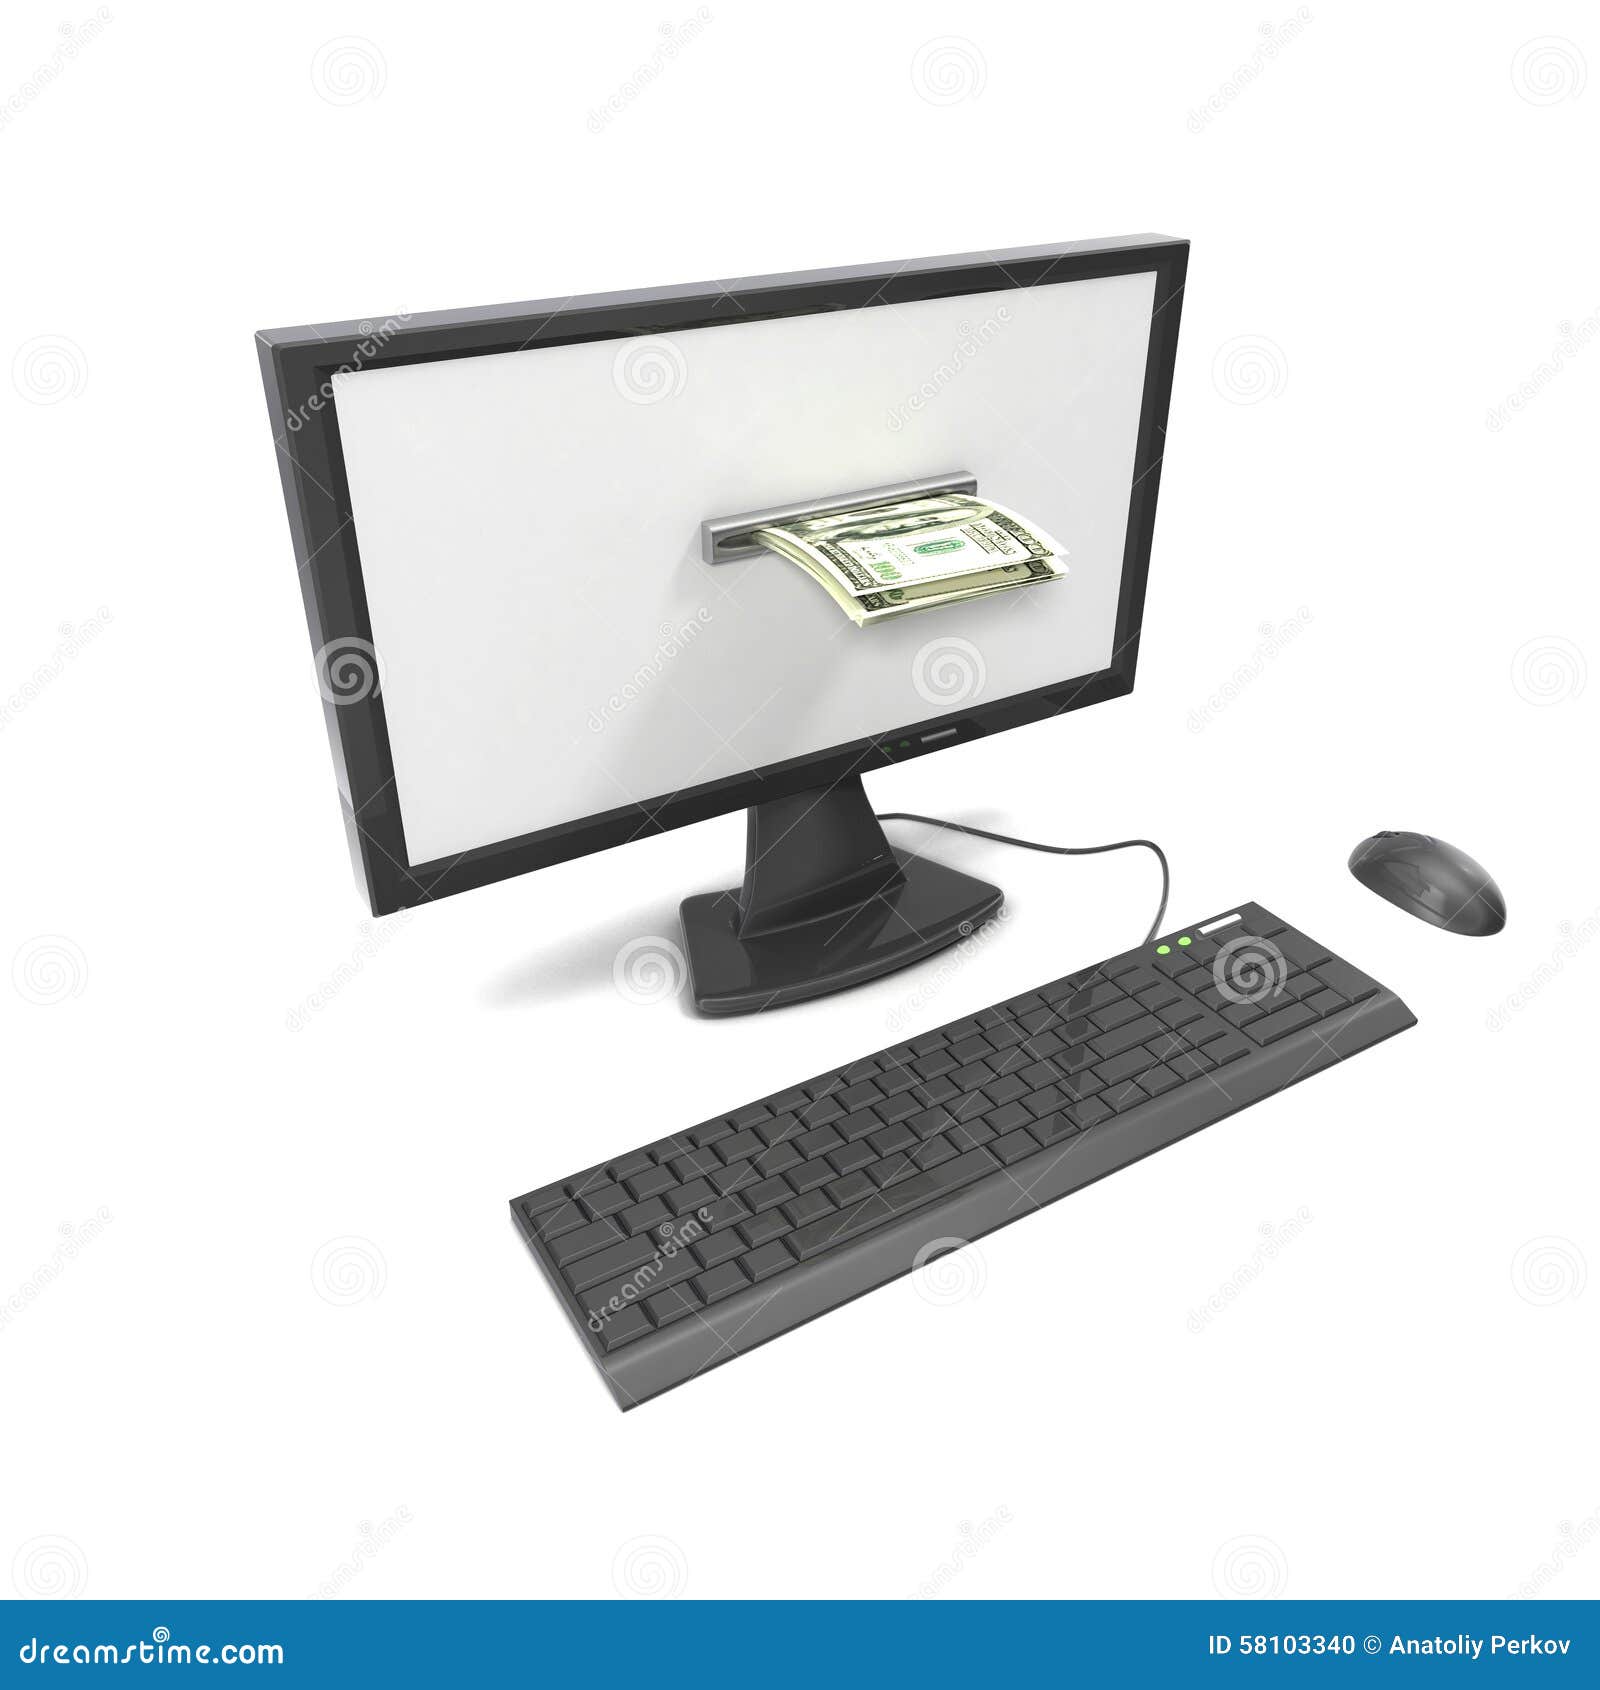 Comp. Лоснистый компьютер на белой предпосылке, можно использовать для онлайн оплат или займов через интернет, и работы на интернете